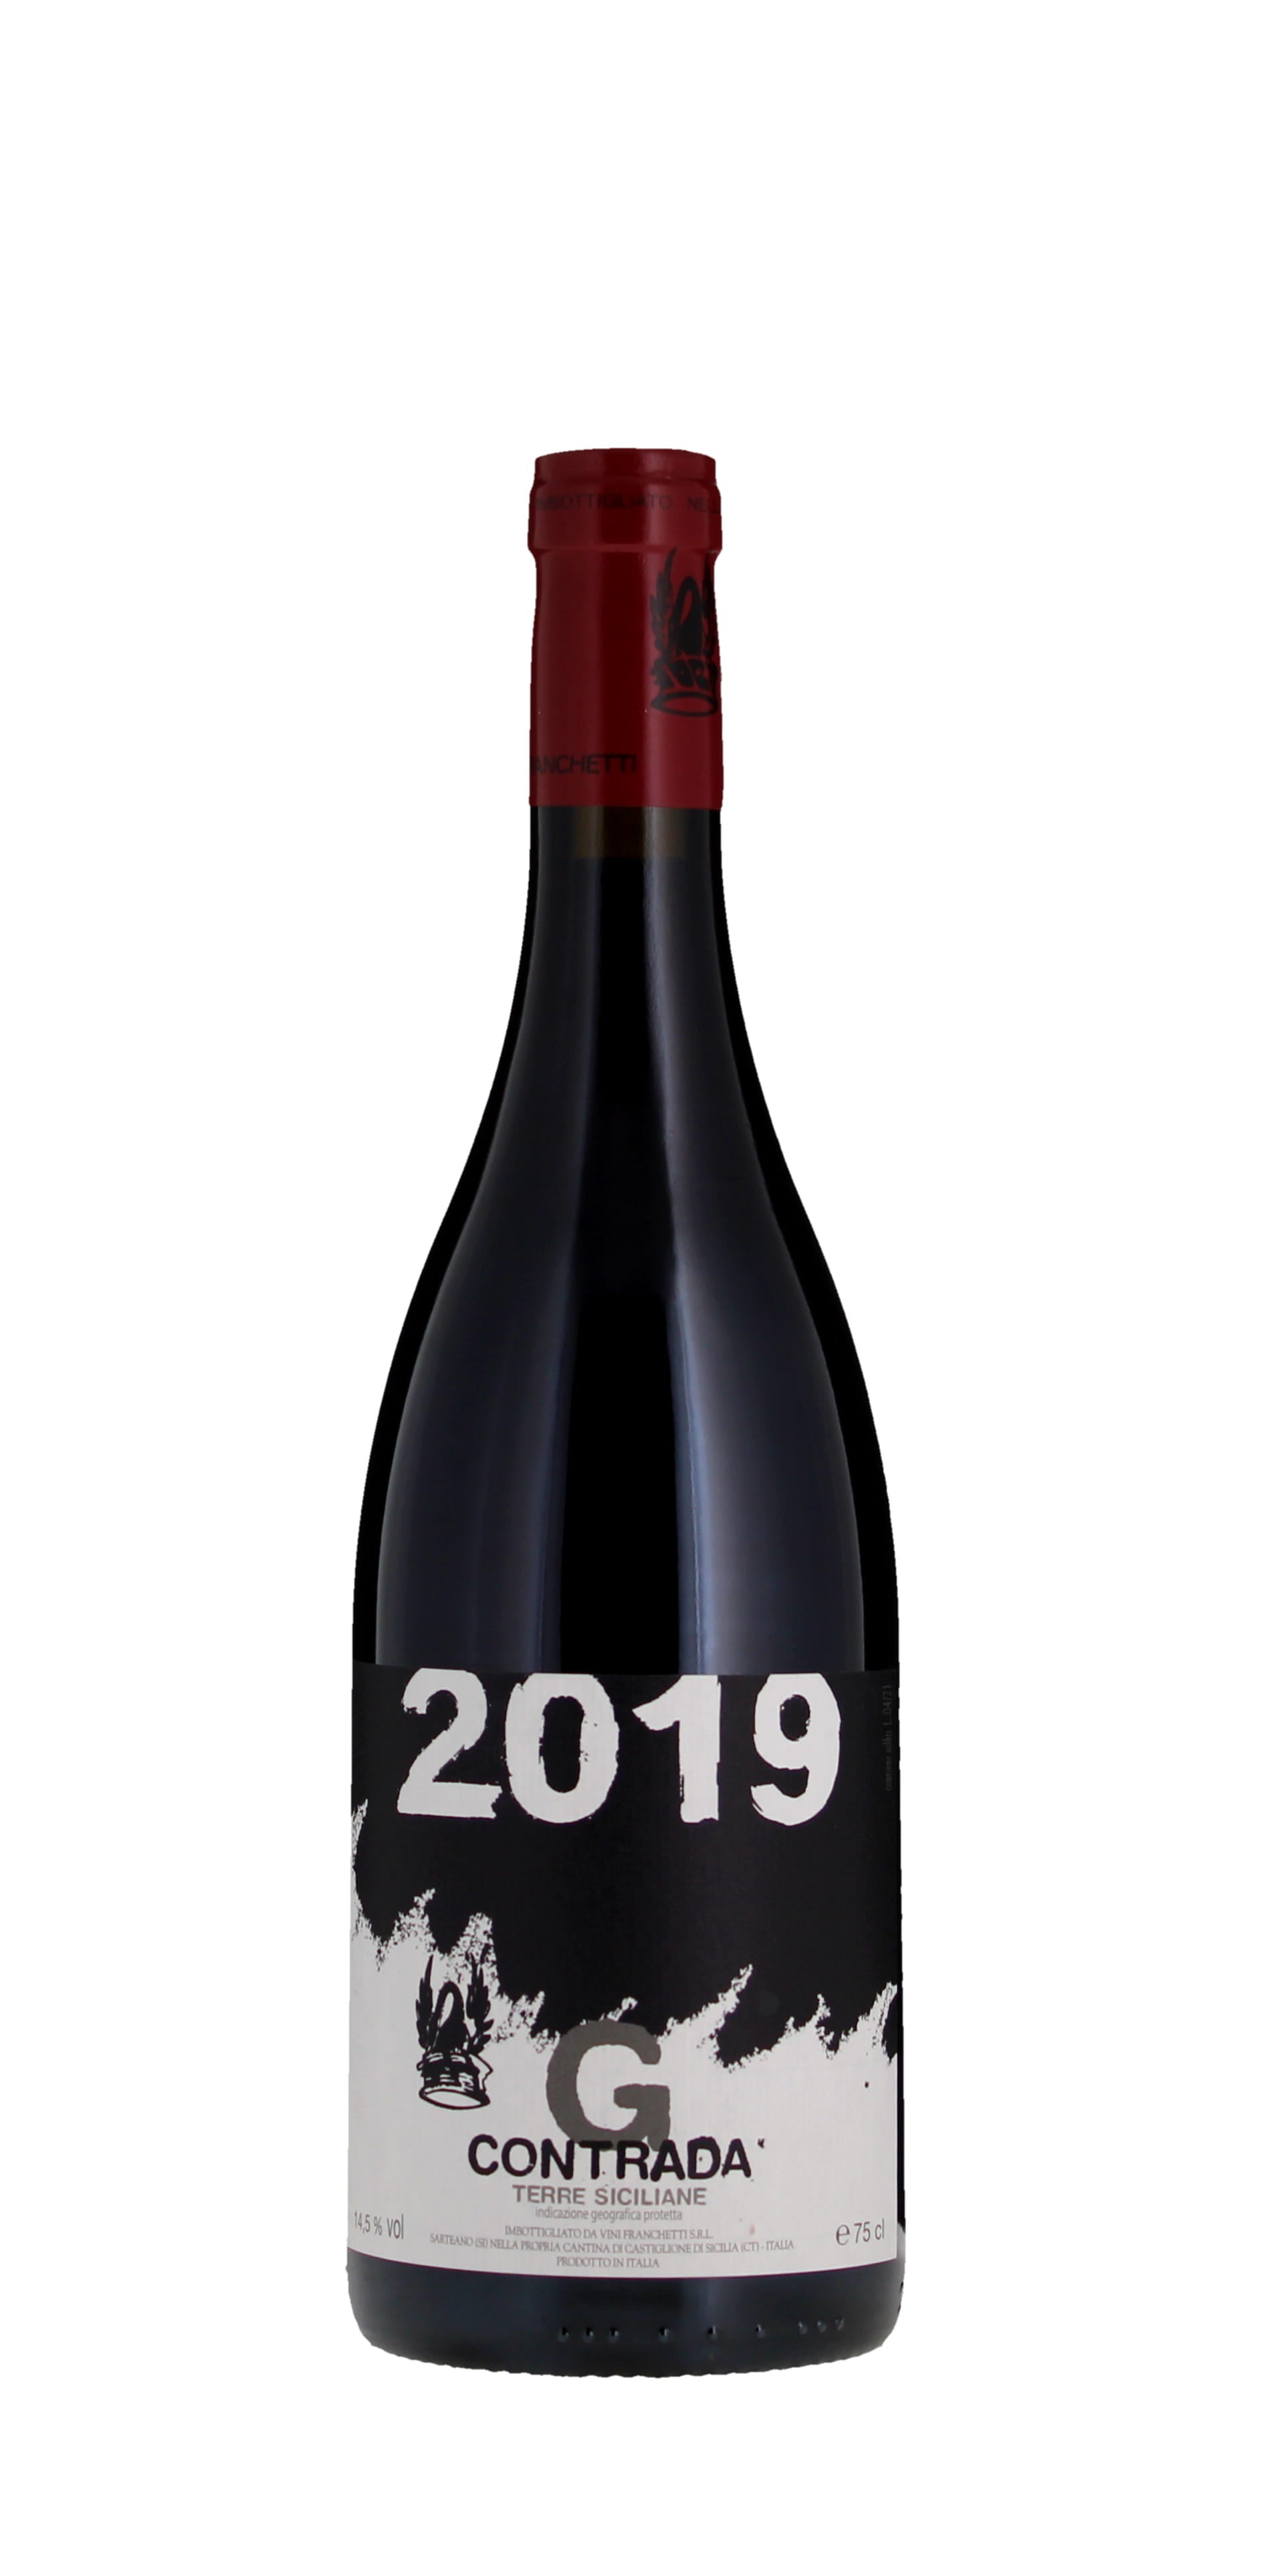 Guardiola Contrada Salusbury Terre IGT 2019 & - Bar G Passopisciaro Siciliane Rosso Winestore